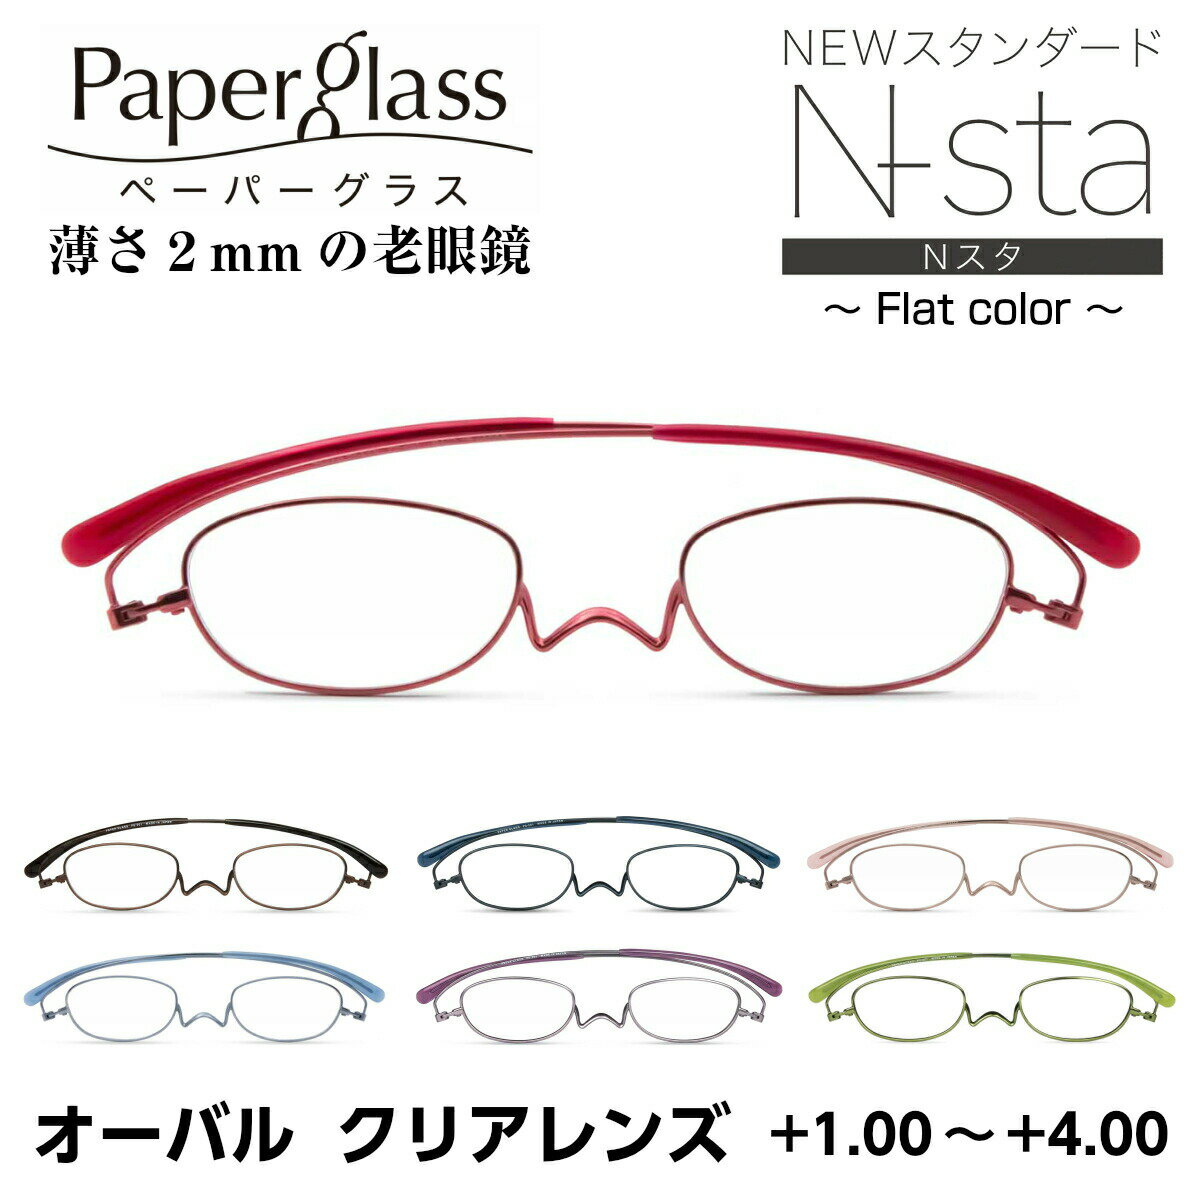 薄さ2mmの老眼鏡 ペーパーグラス オーバル Nスタ ニュースタンダード フラットカラー クリアレンズ 201 0PG201 折りたたみ 超薄型 コンパクト スリム